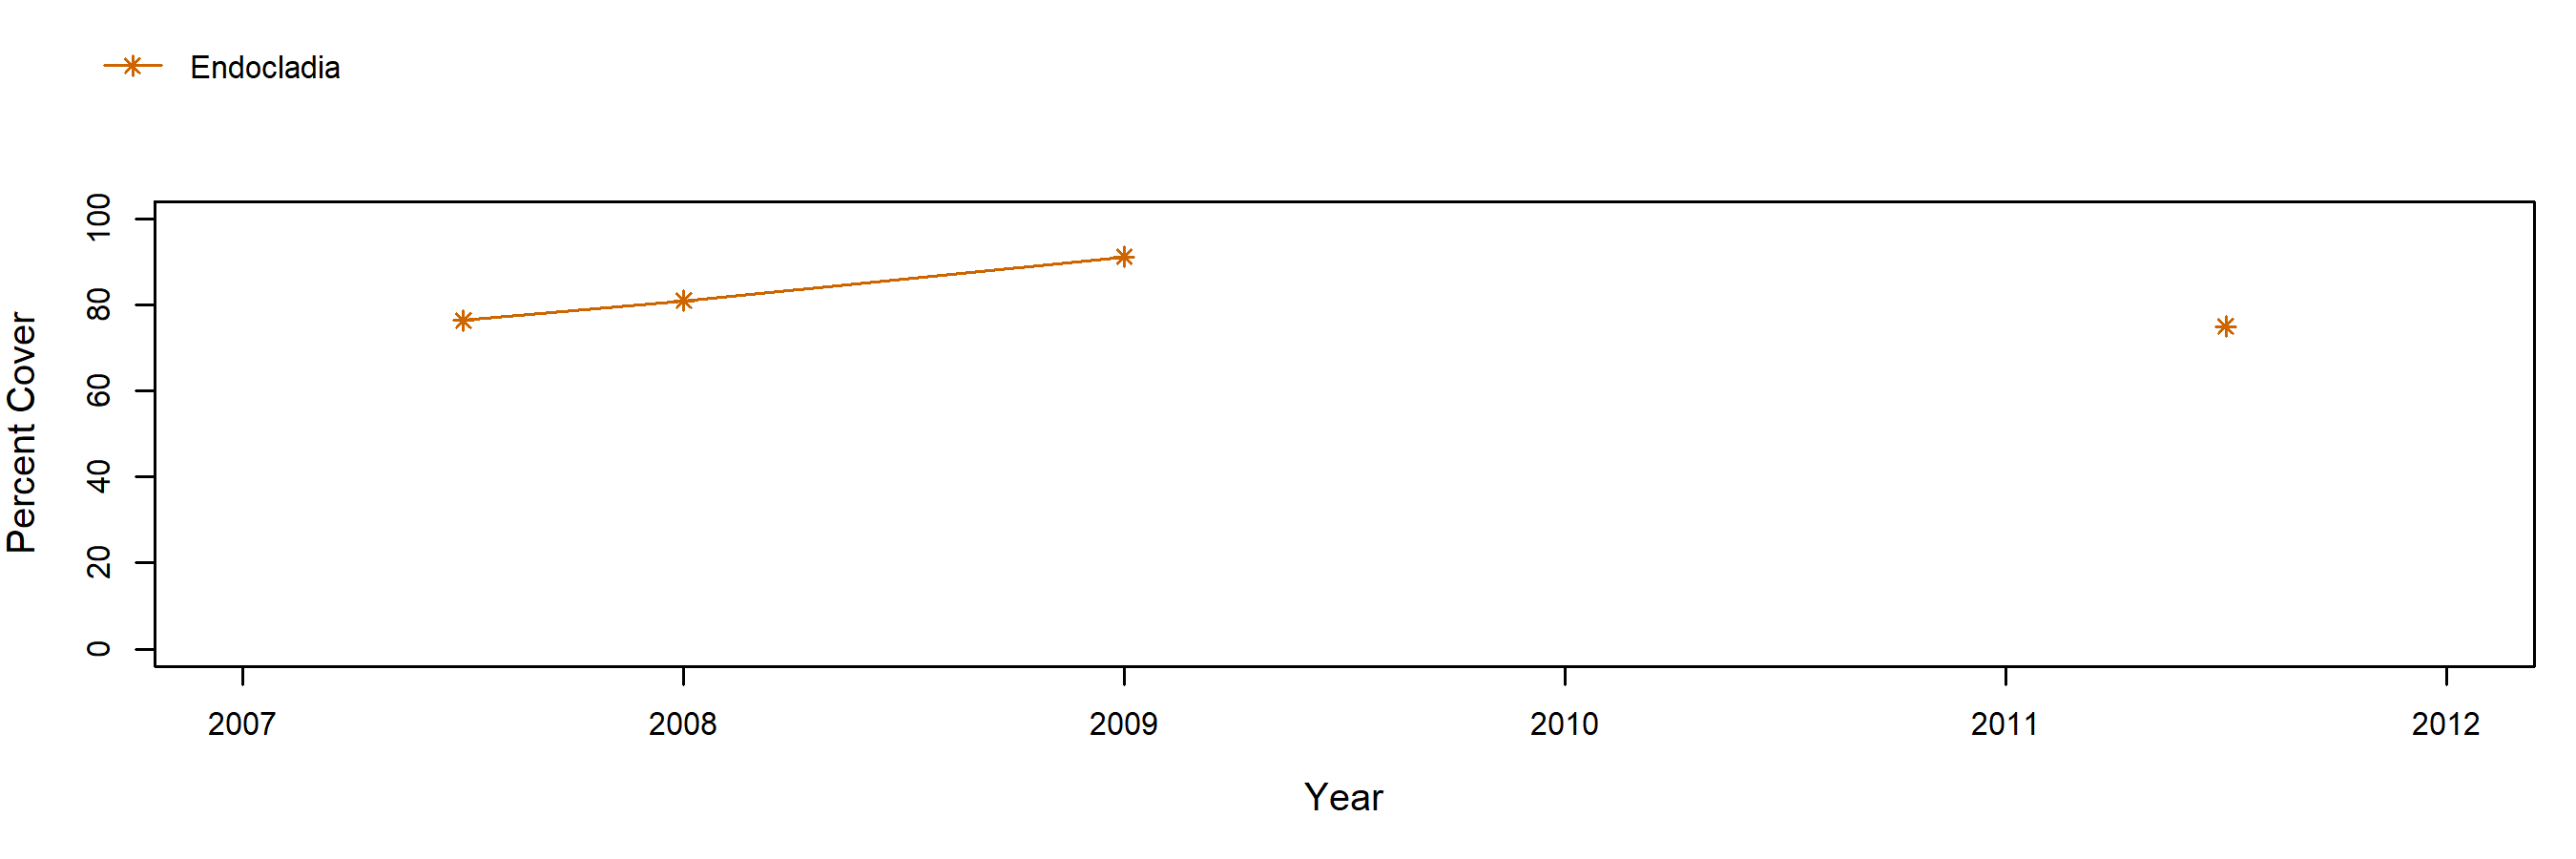 Vista del Mar Endocladia trend plot